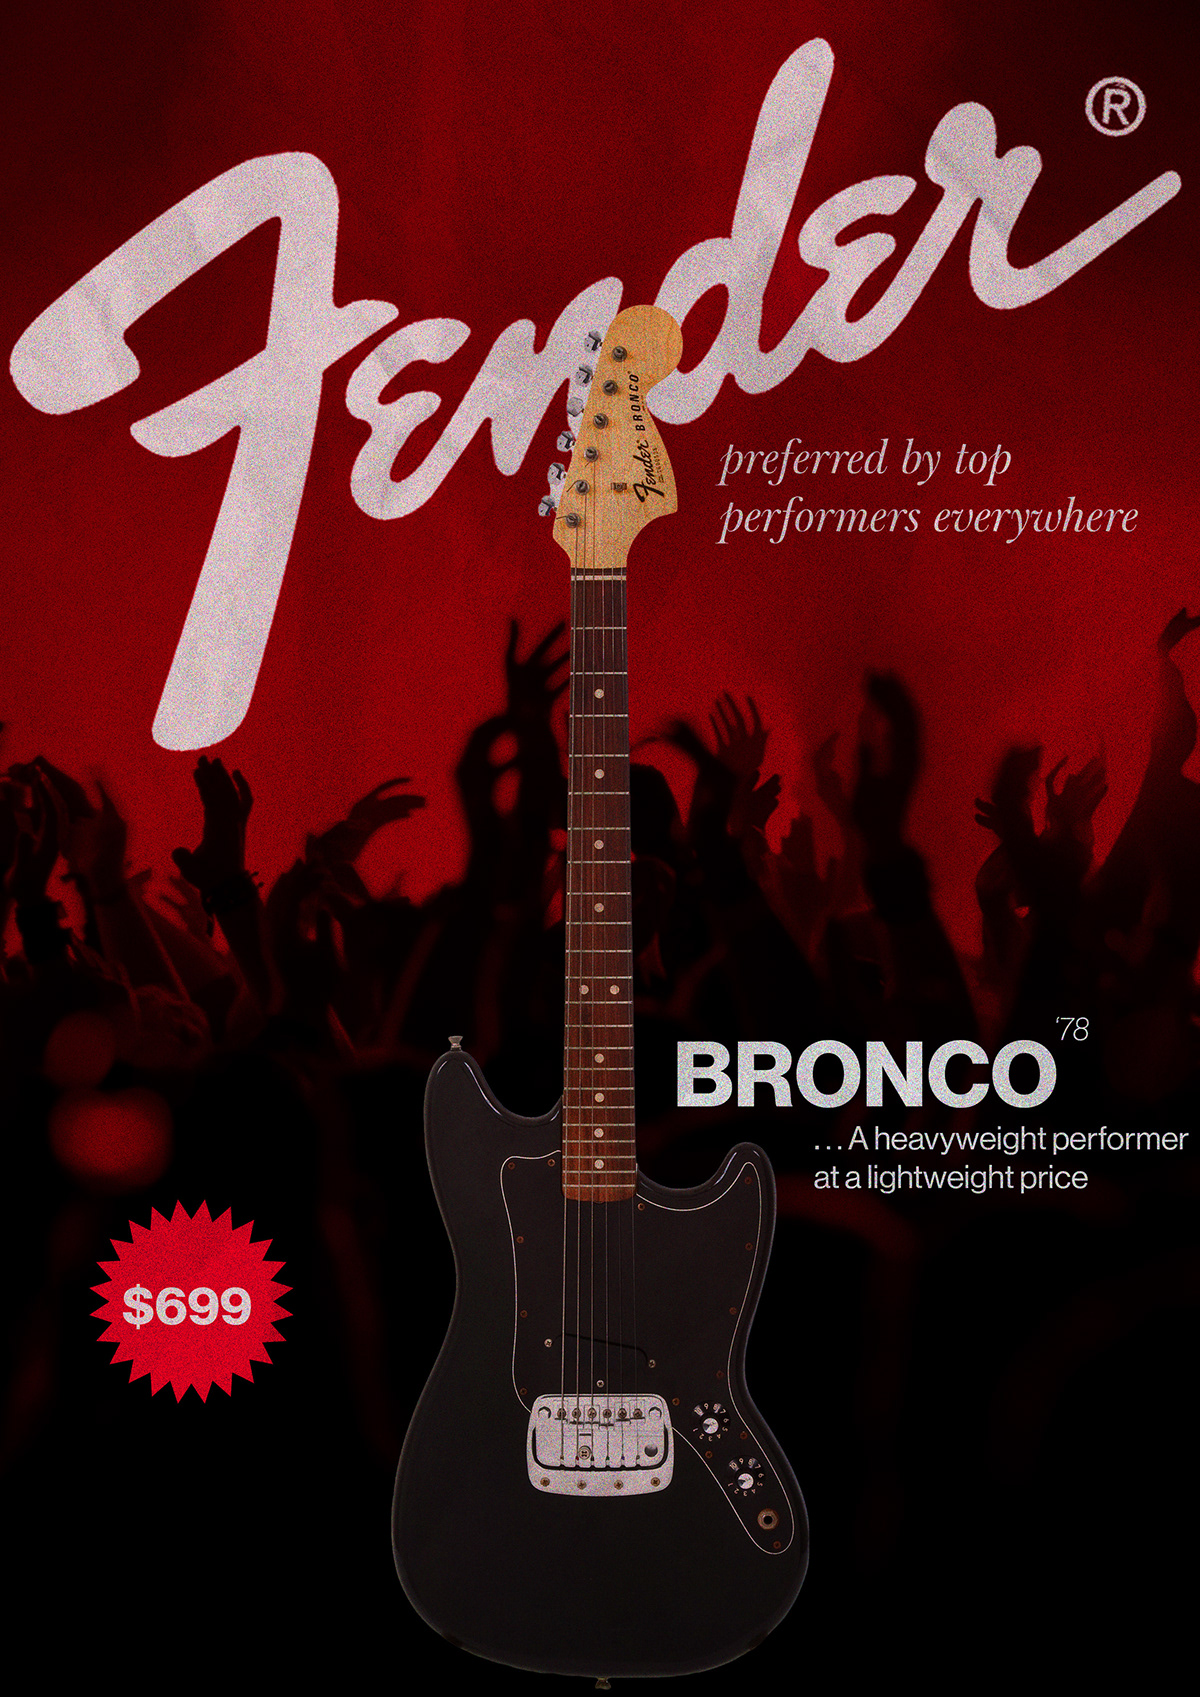 fender publicidad Guitarra musica guitar music ad